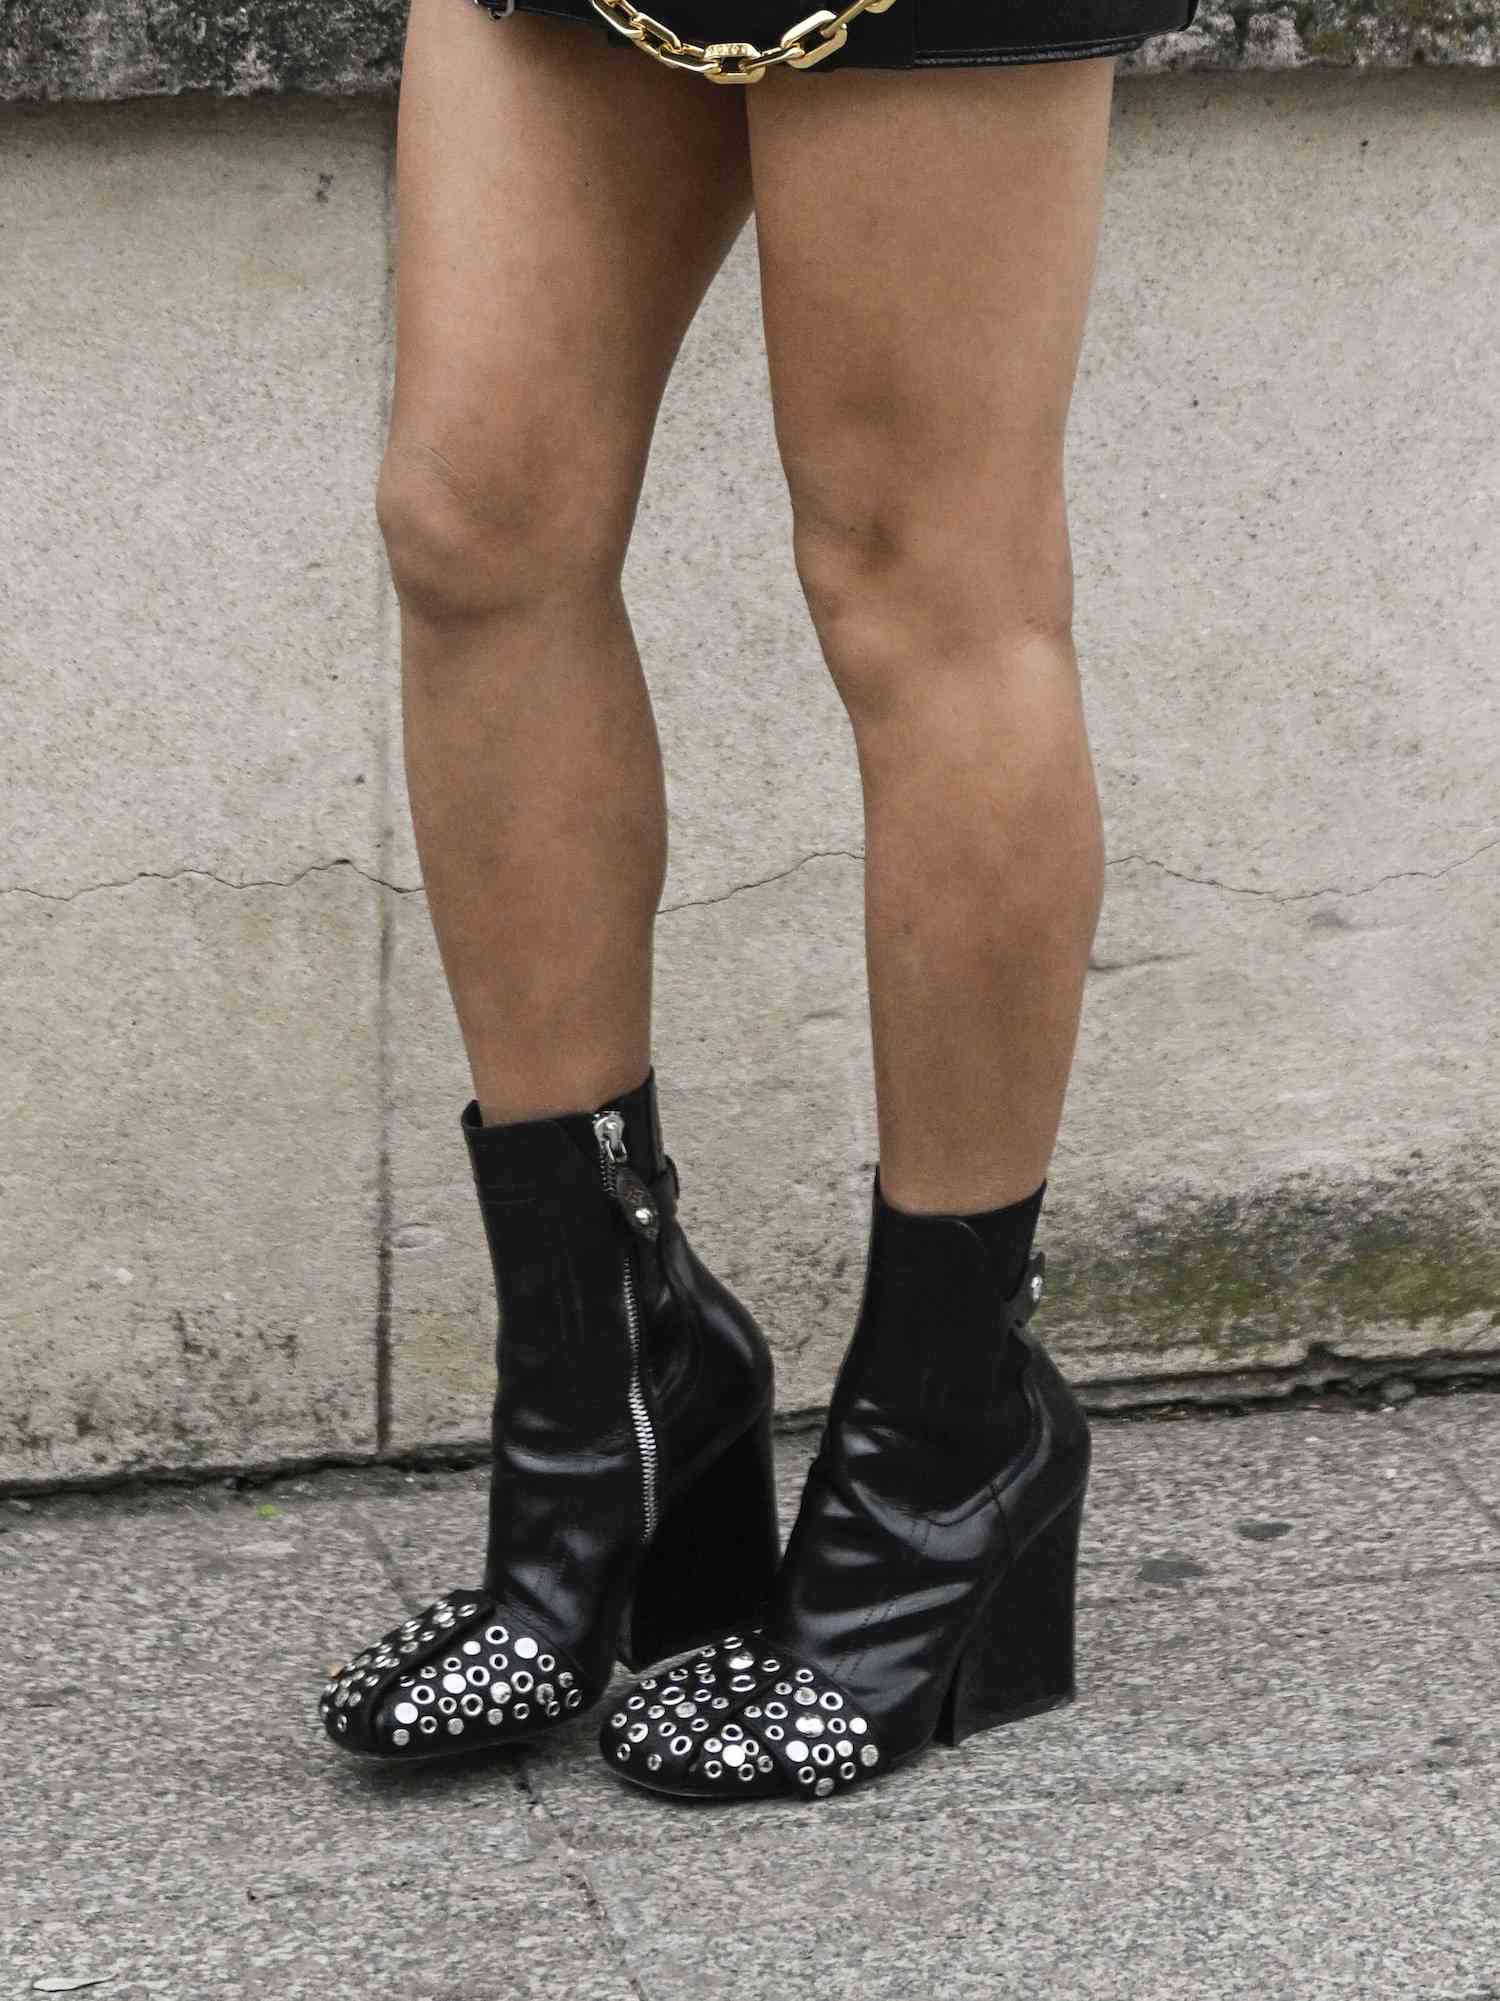 Close de Aimee Song usando botas de couro pretas com pontas e zíperes